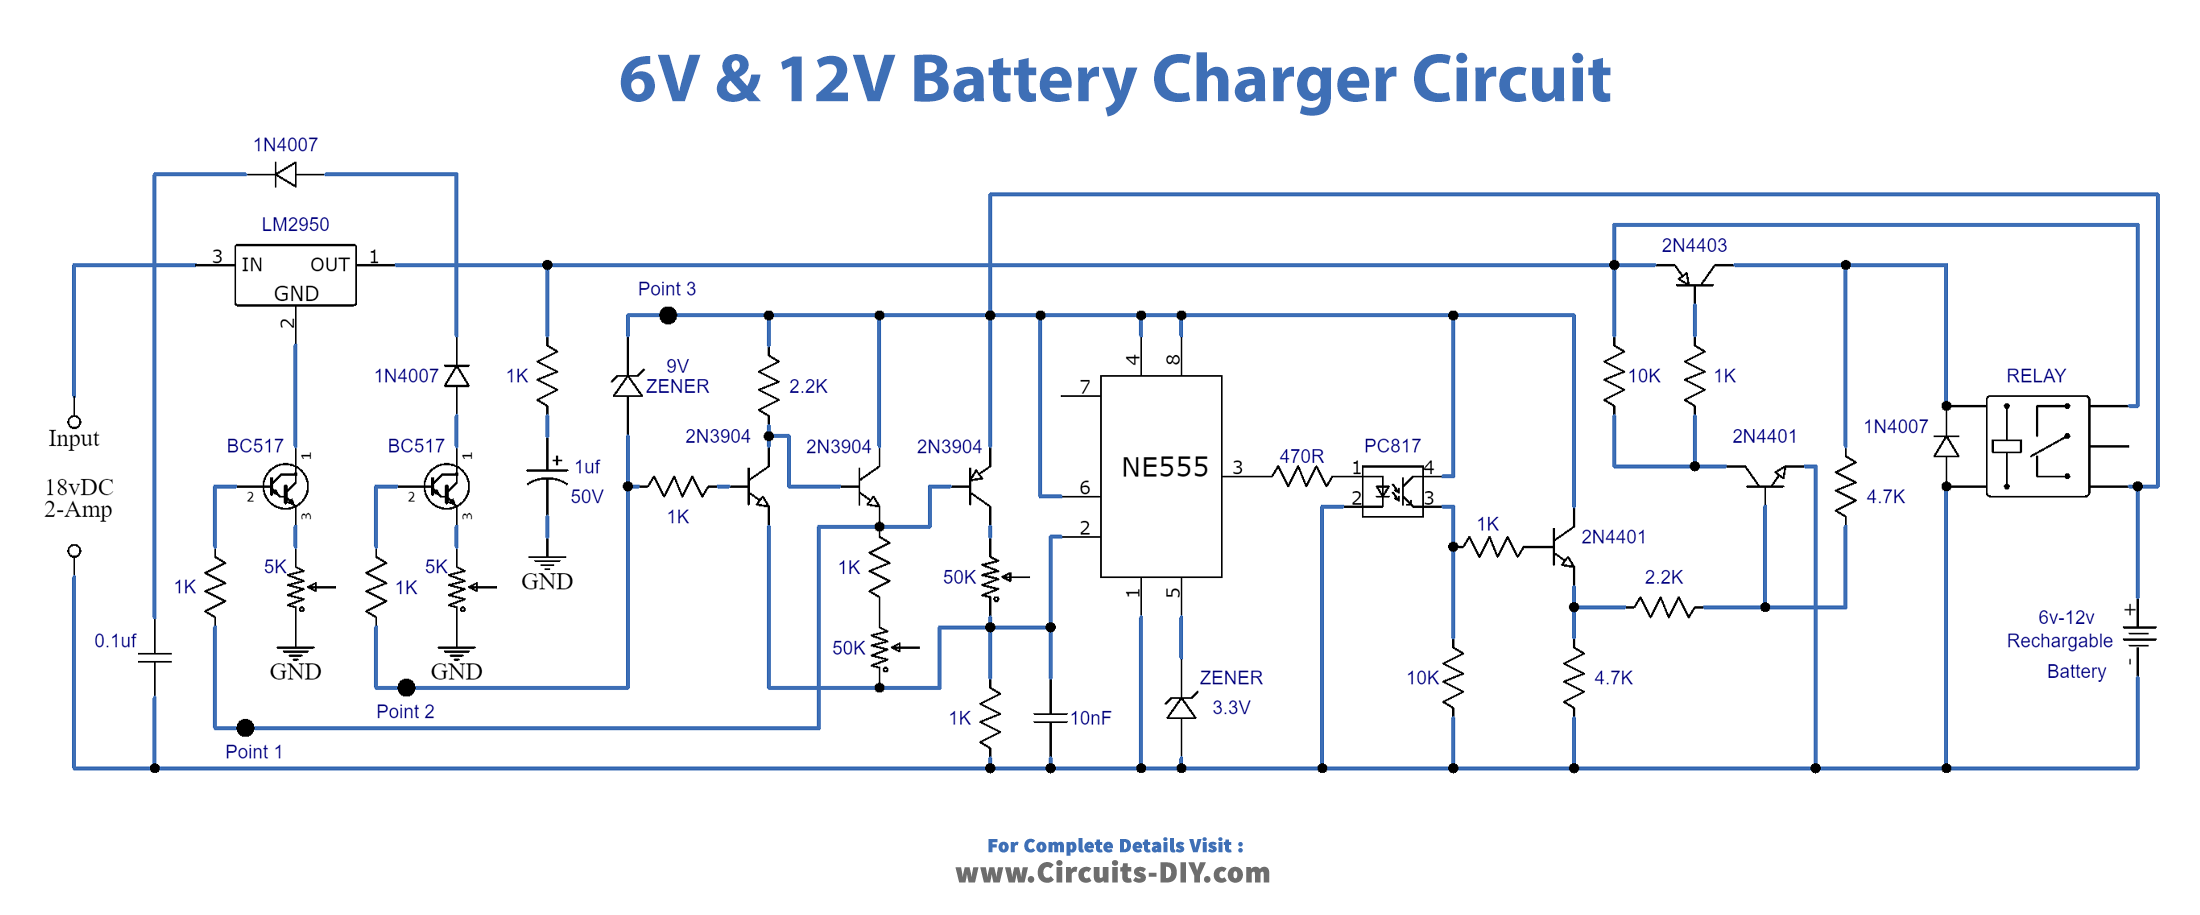 6V & 12V Battery Charger Circuit